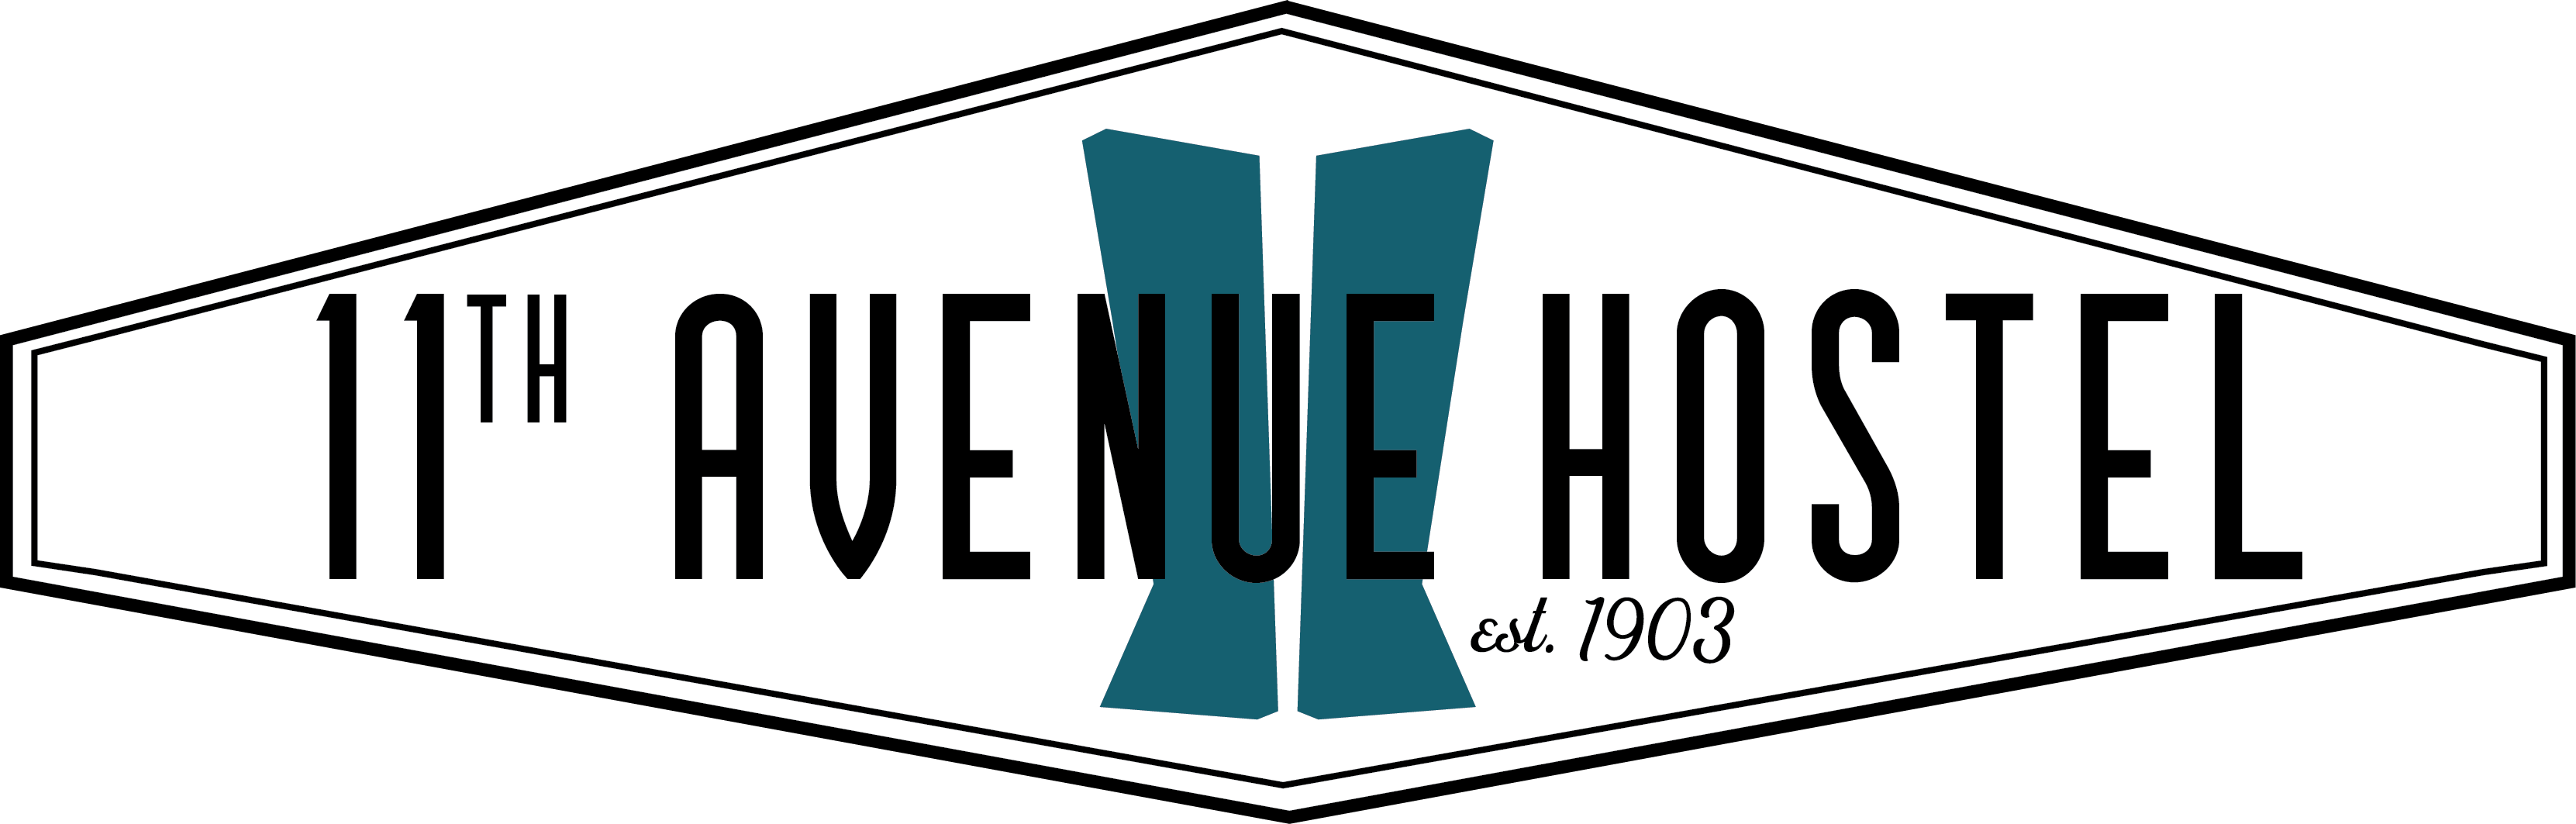 11th Avenue Hostel Logo